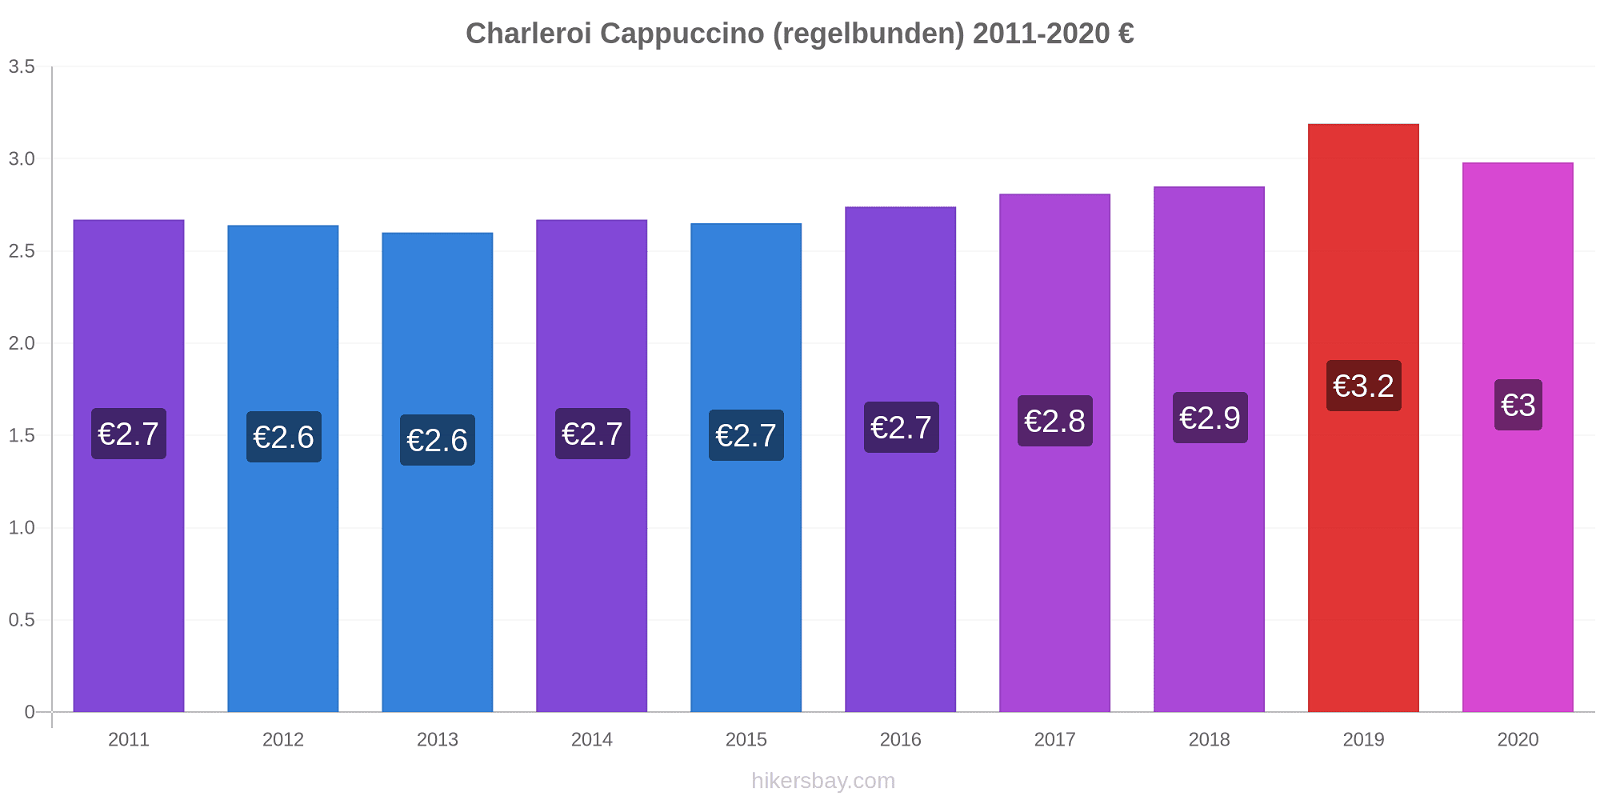 Charleroi prisförändringar Cappuccino (regelbunden) hikersbay.com